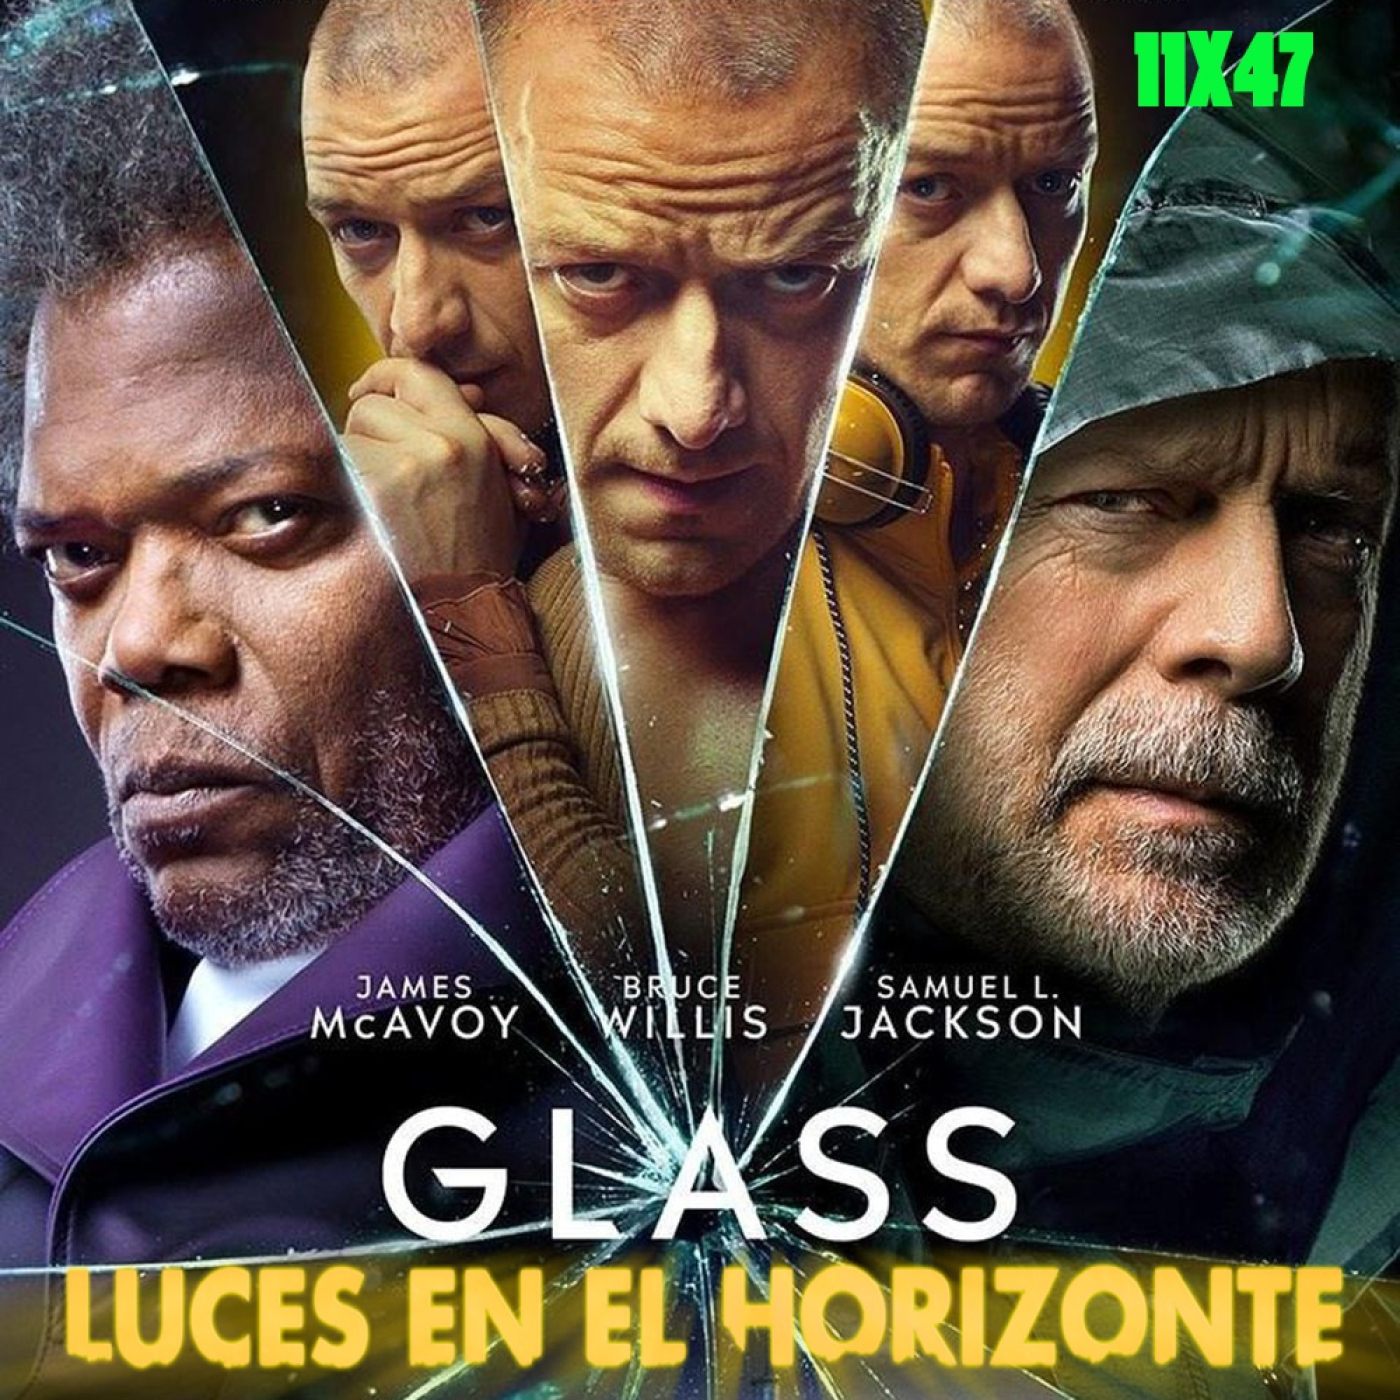 Glass - Luces en el Horizonte 11x47